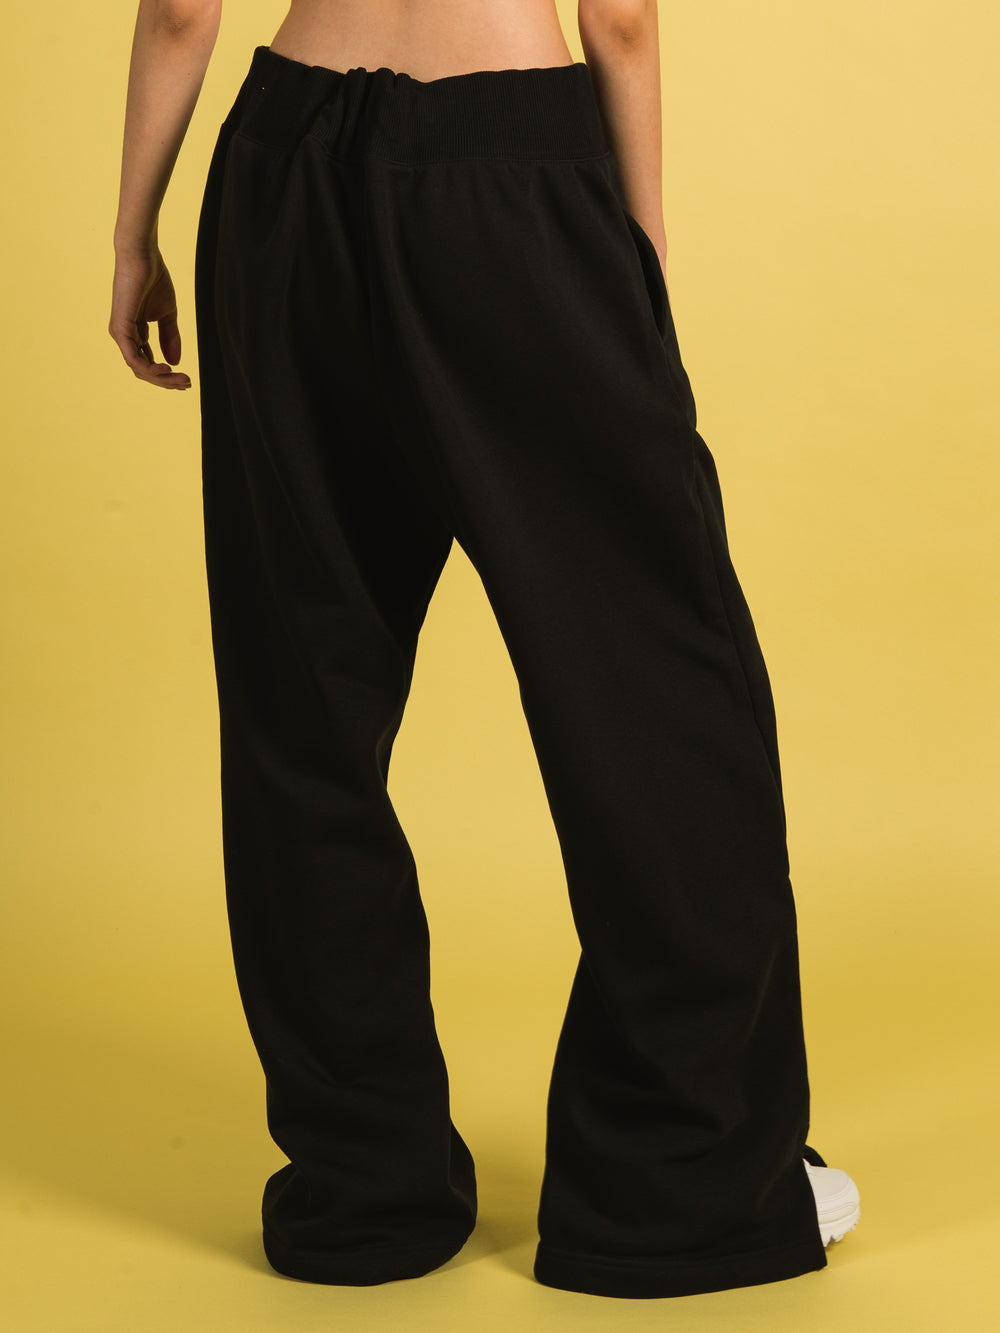 Nike Sportswear Phoenix Fleece Pants for women, black! Buy online